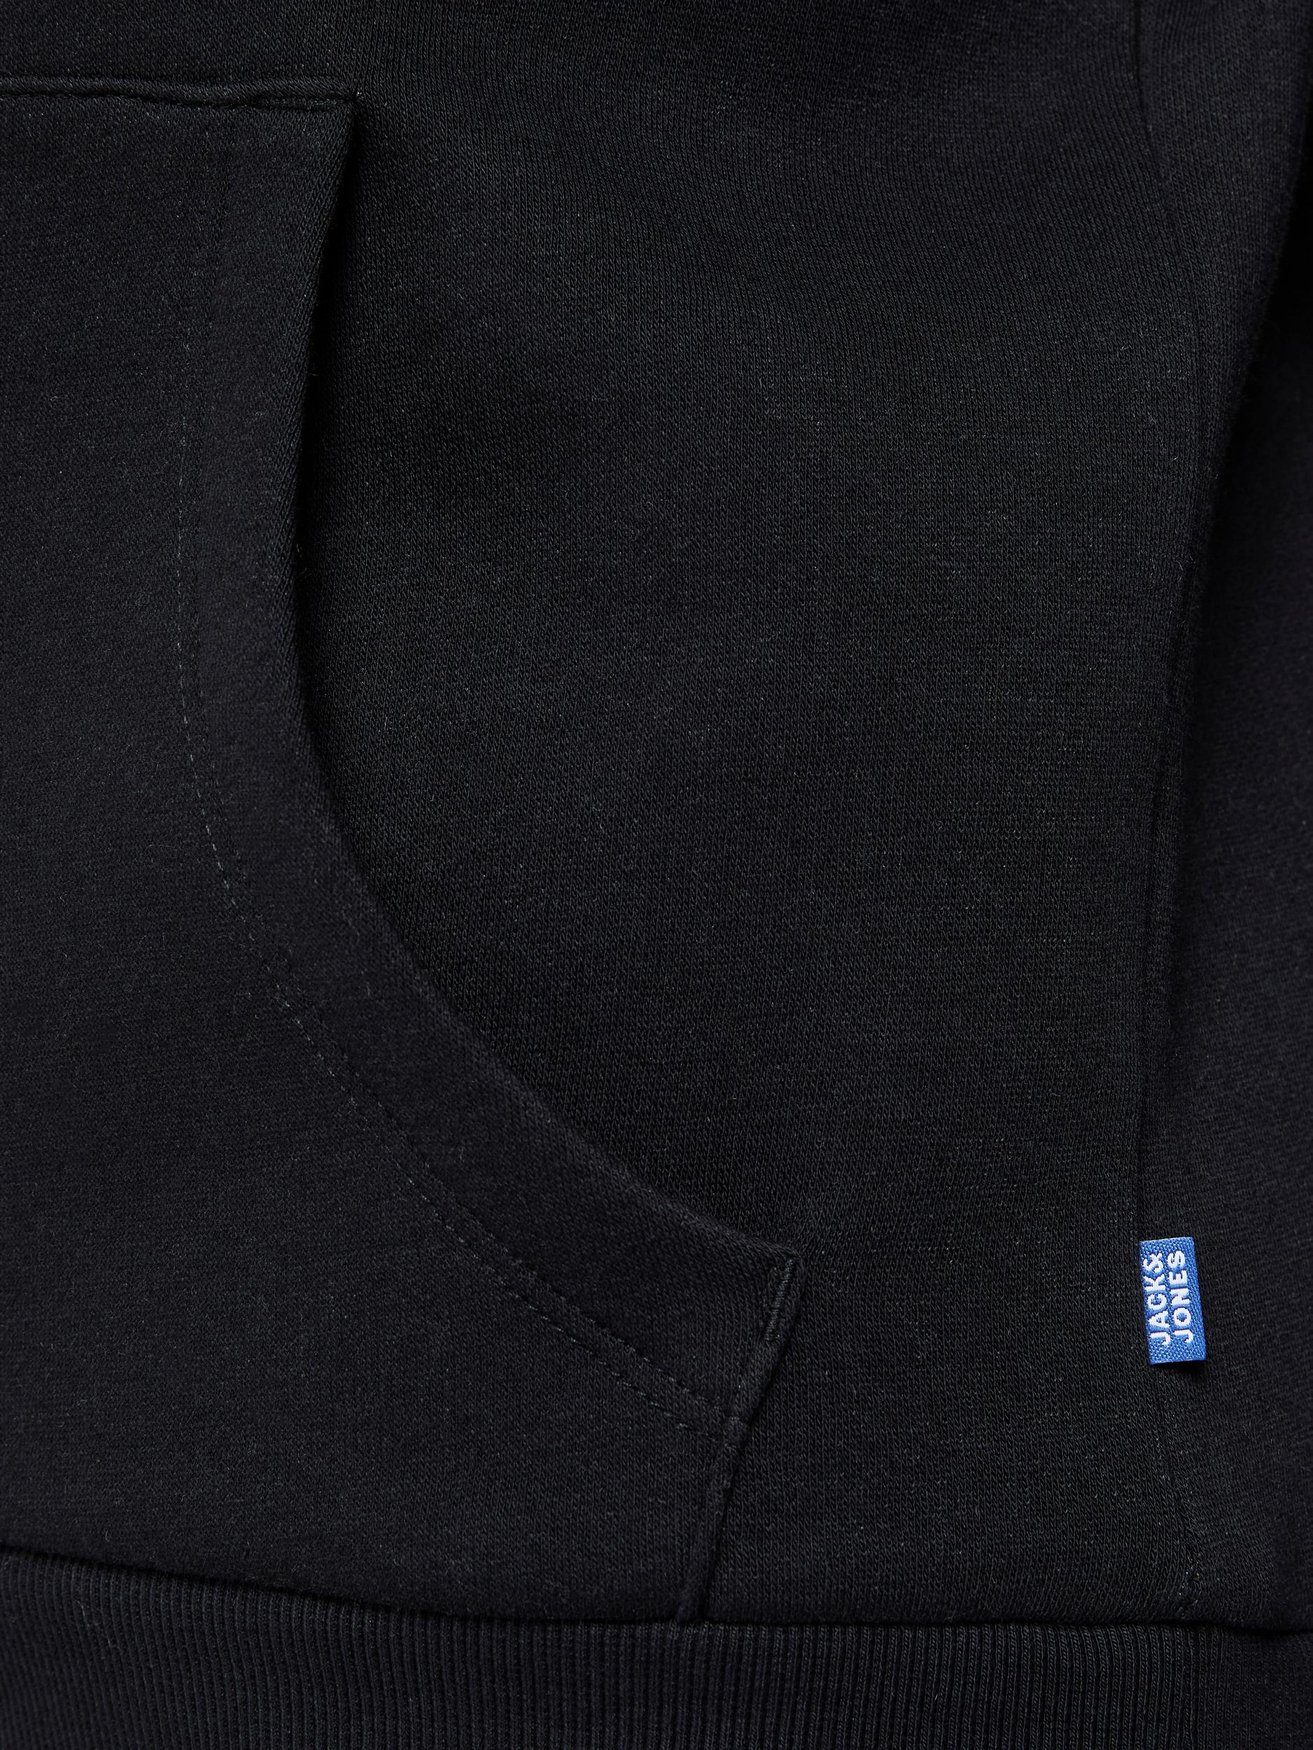 Kapuzen Sweater Hoodie 6502 Schwarz & in Jack JJECORP Hoodie Logo Jones Pullover